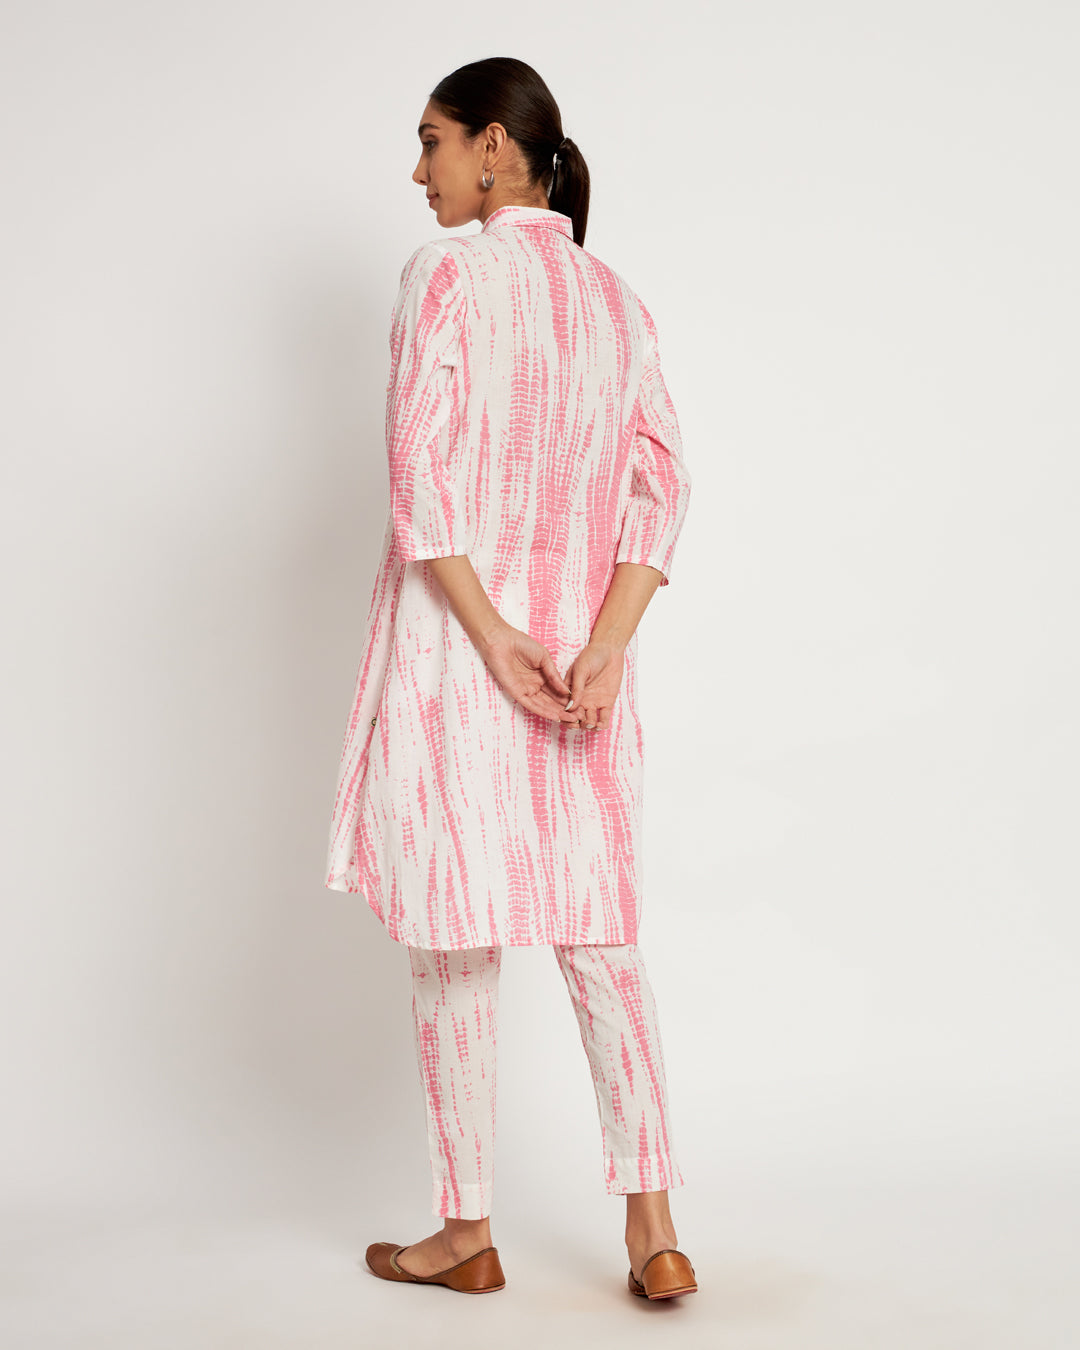 Printed Blush Pink Shibori Bliss Collared Co-ord Set